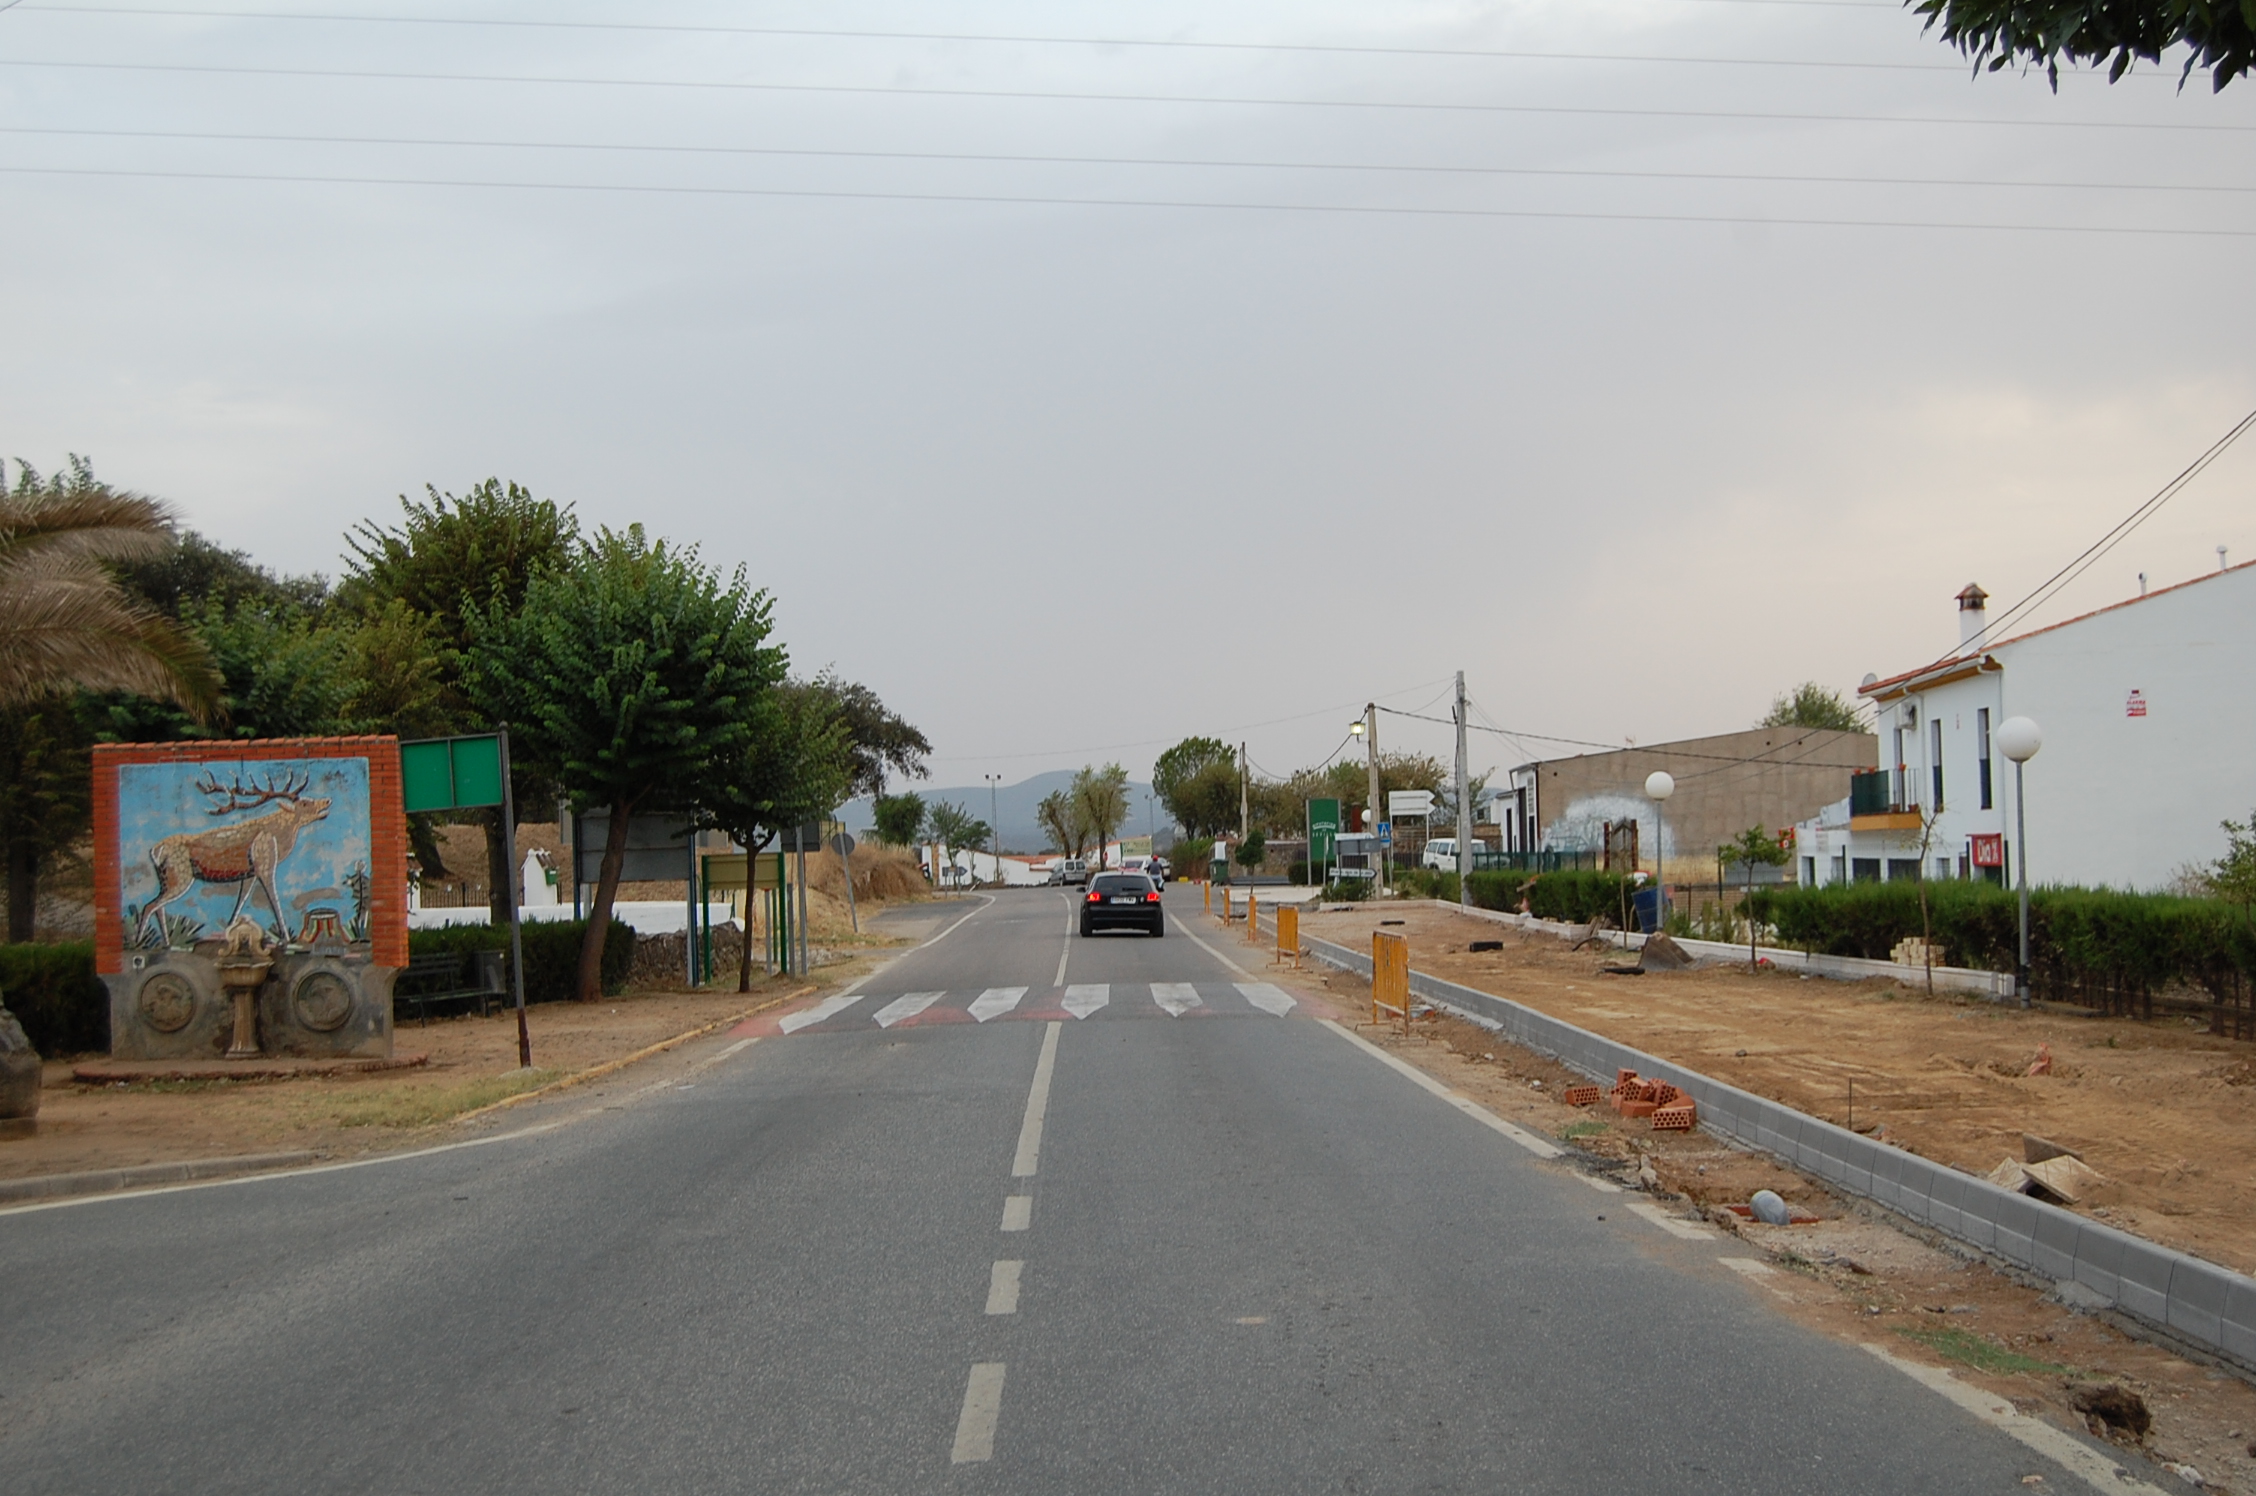 Carretera hacia Santa Olalla rj.jpg